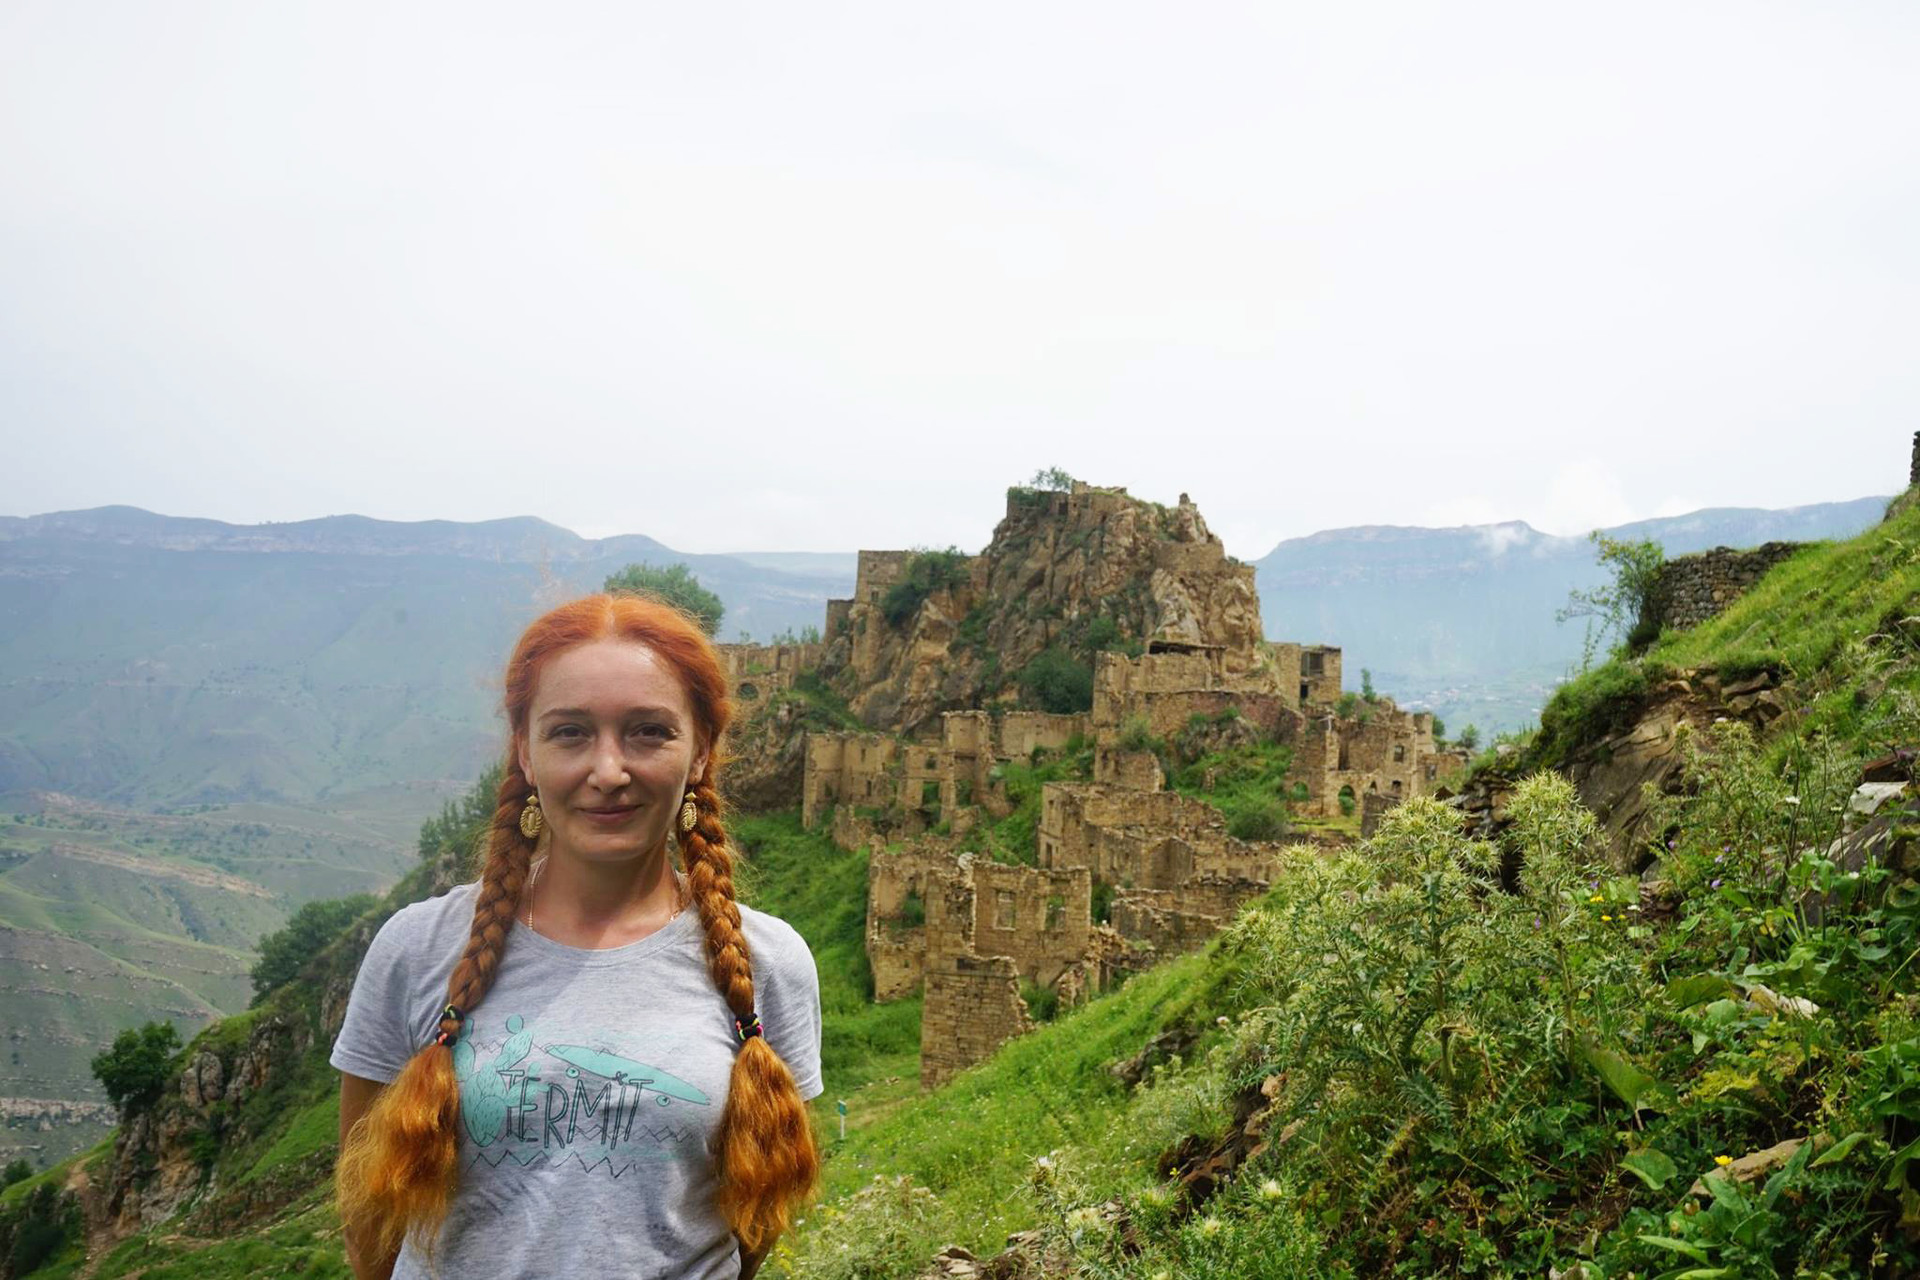 Albina je umetnica iz Mahačkale. Sama je prišla obiskat opuščeno starodavno vas Gamustl v odmaknjenih gorah v Dagestanu, ki ji rečejo tudi 